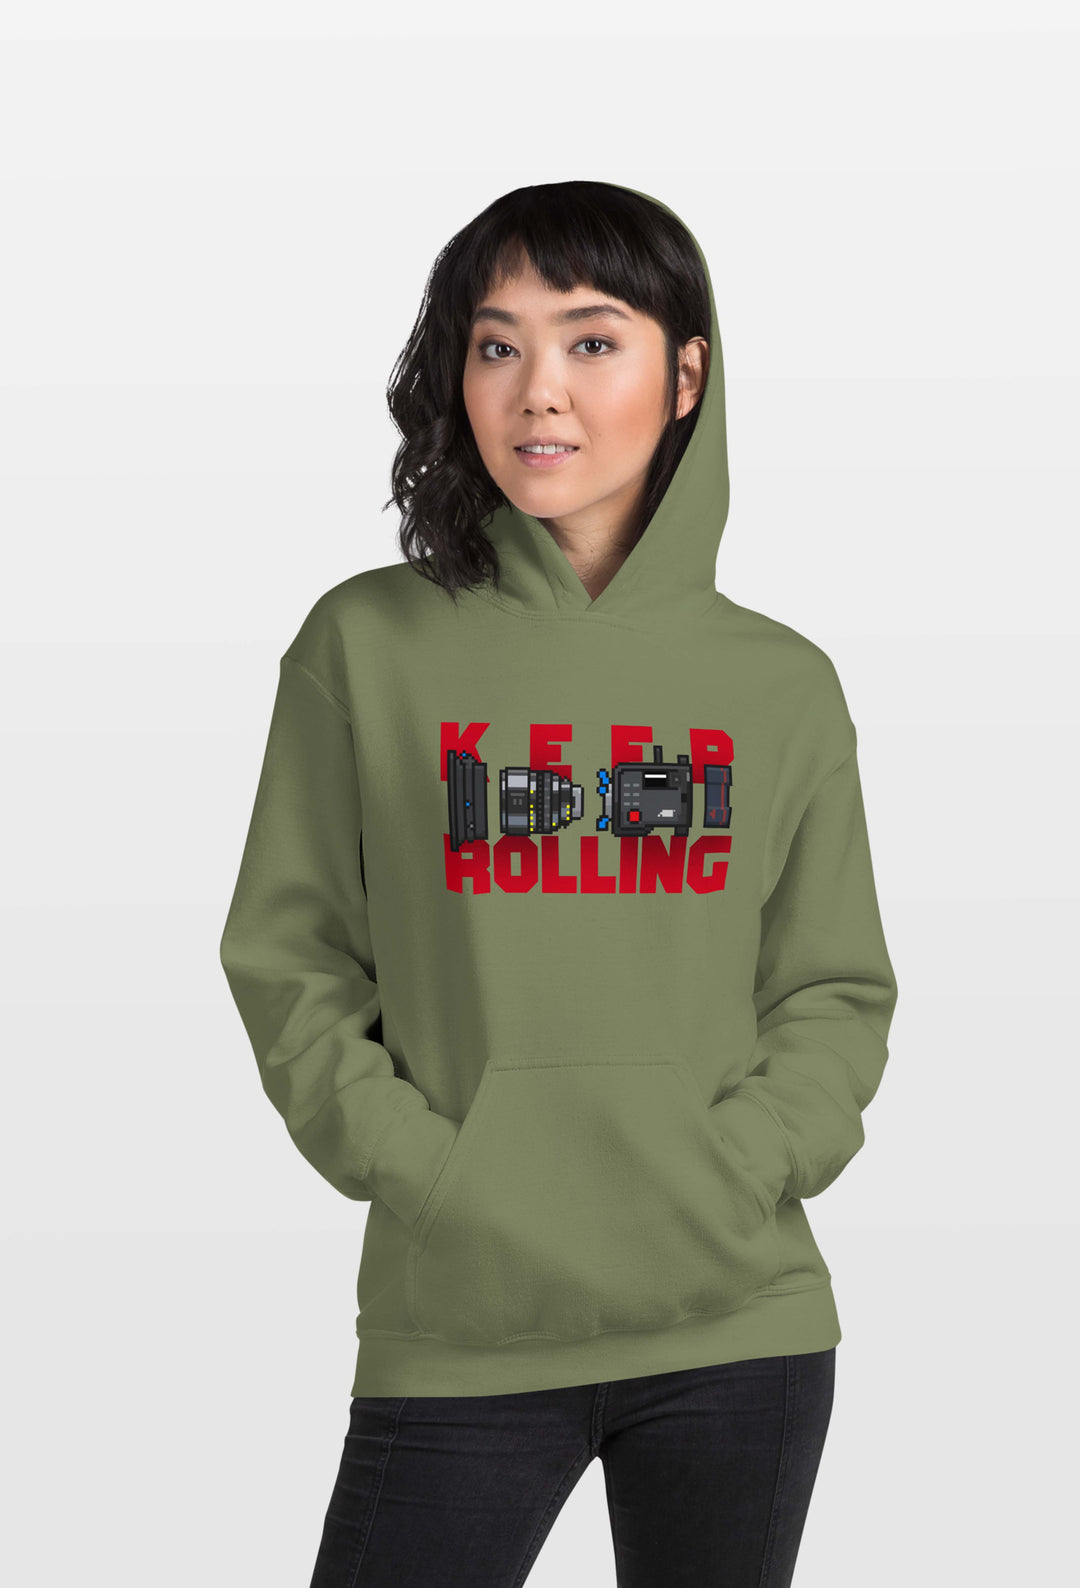 Hoodie | Keep Rolling